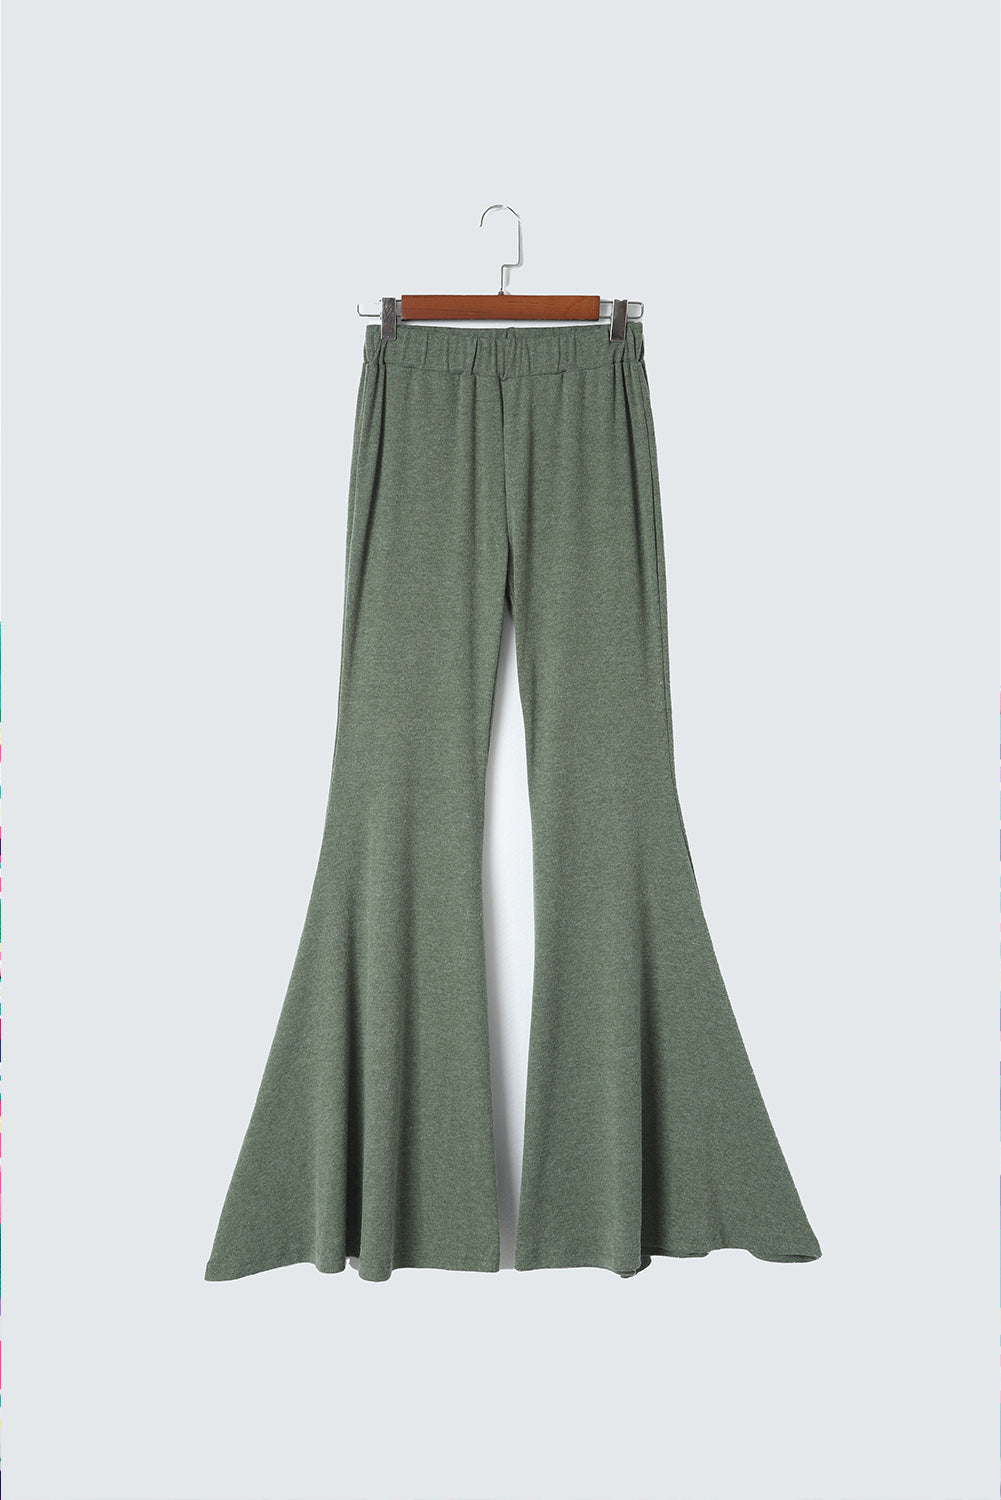 Pantaloni verdi a vita alta e svasati